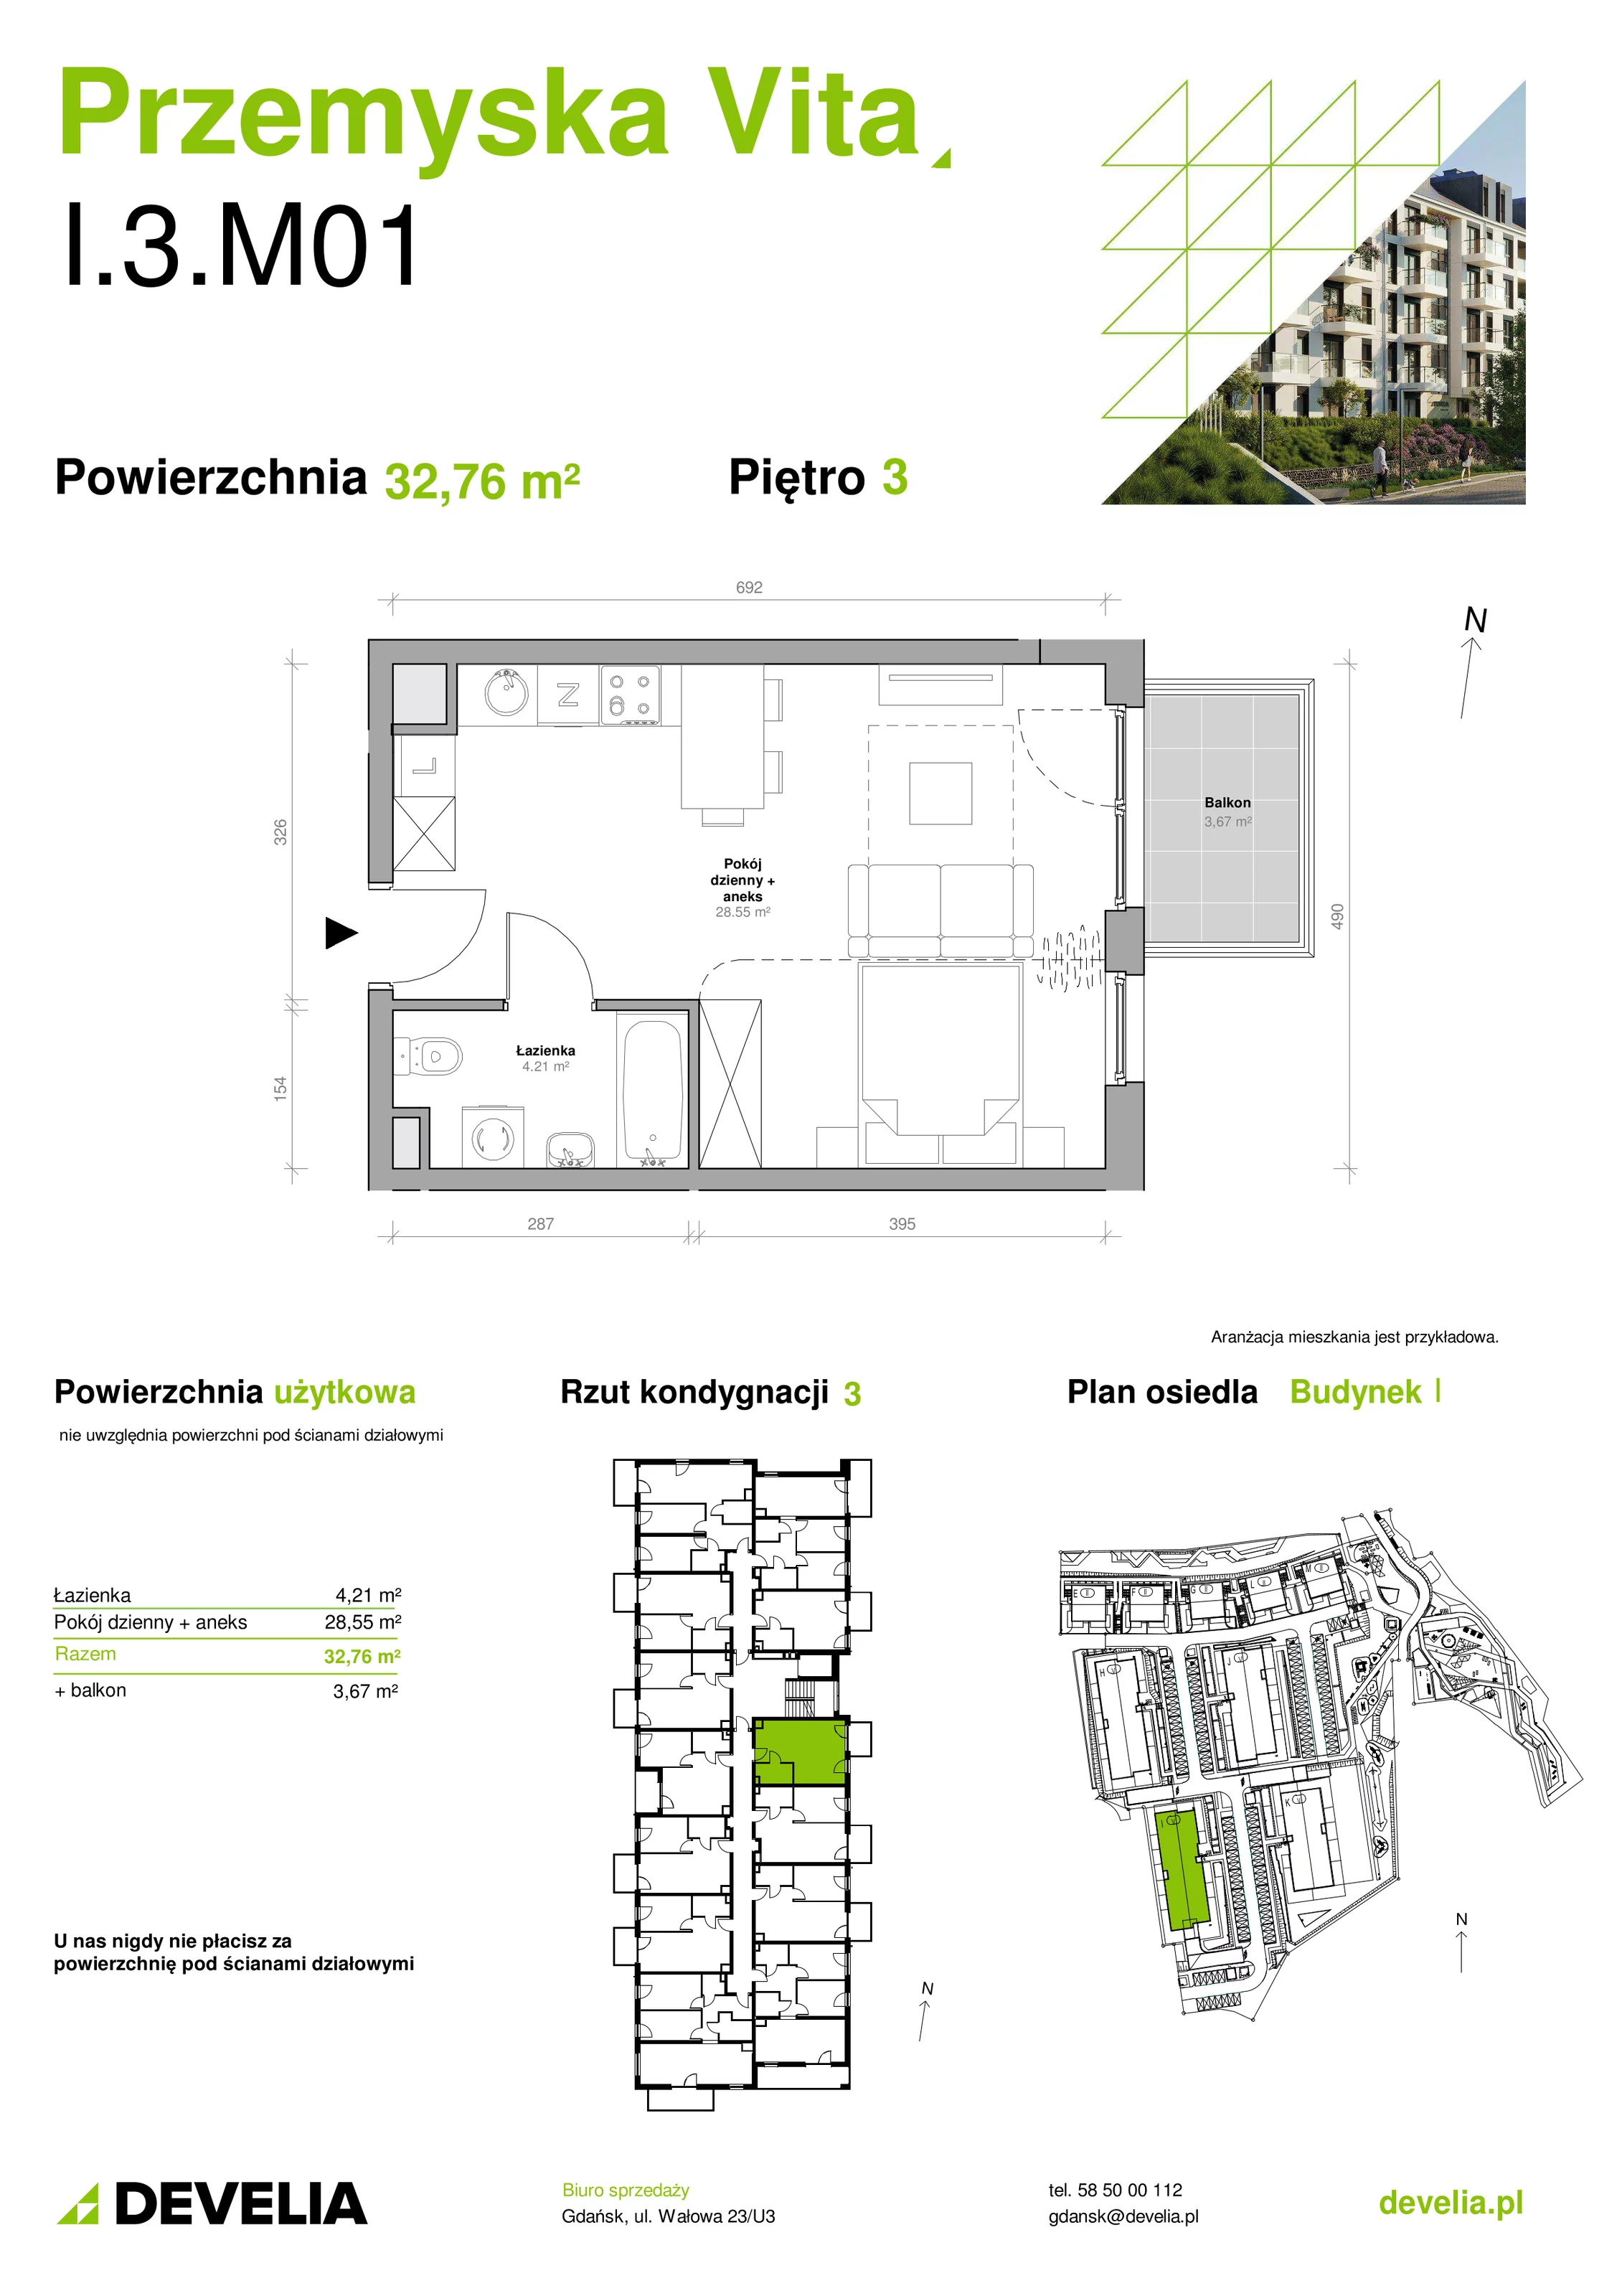 Mieszkanie 32,76 m², piętro 3, oferta nr I.3.M01, Przemyska Vita, Gdańsk, Ujeścisko-Łostowice, Ujeścisko, ul. Przemyska 37